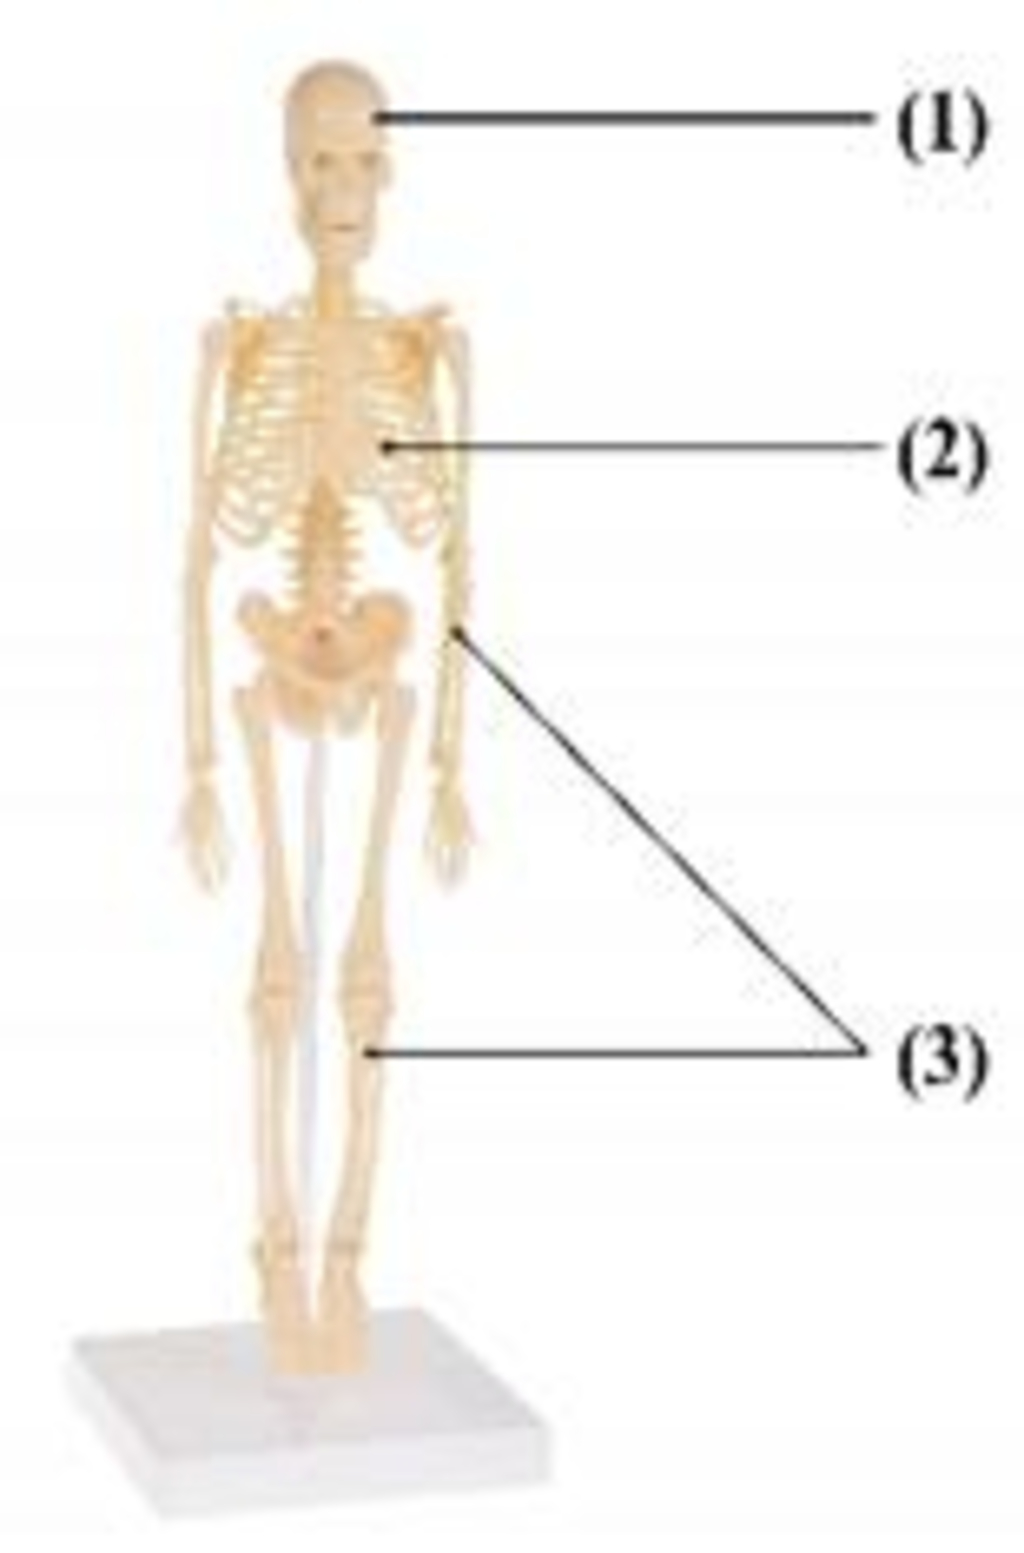 Mô hình giải phẫu xương người 170cm đa chức năng